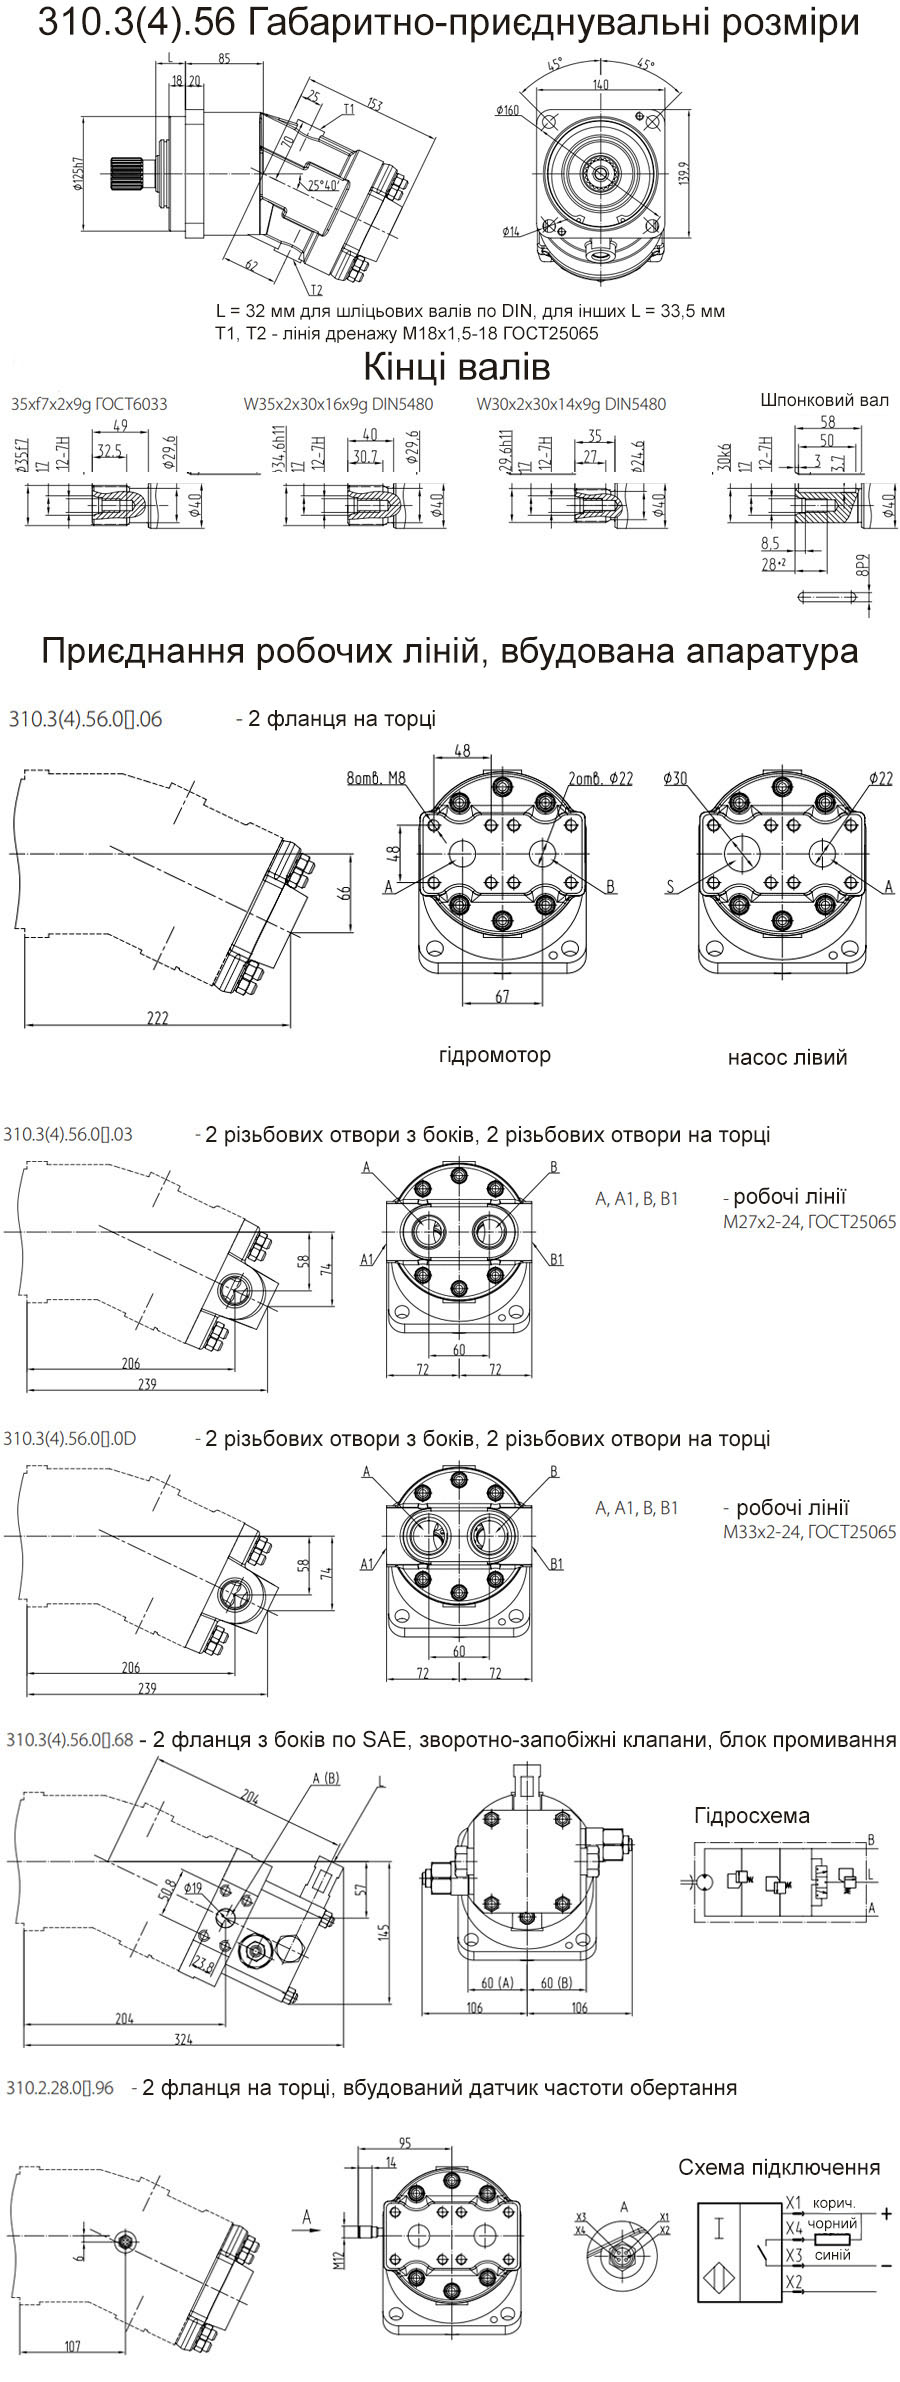 Габаритно-приєднувальні розміри гідромоторів 210.20